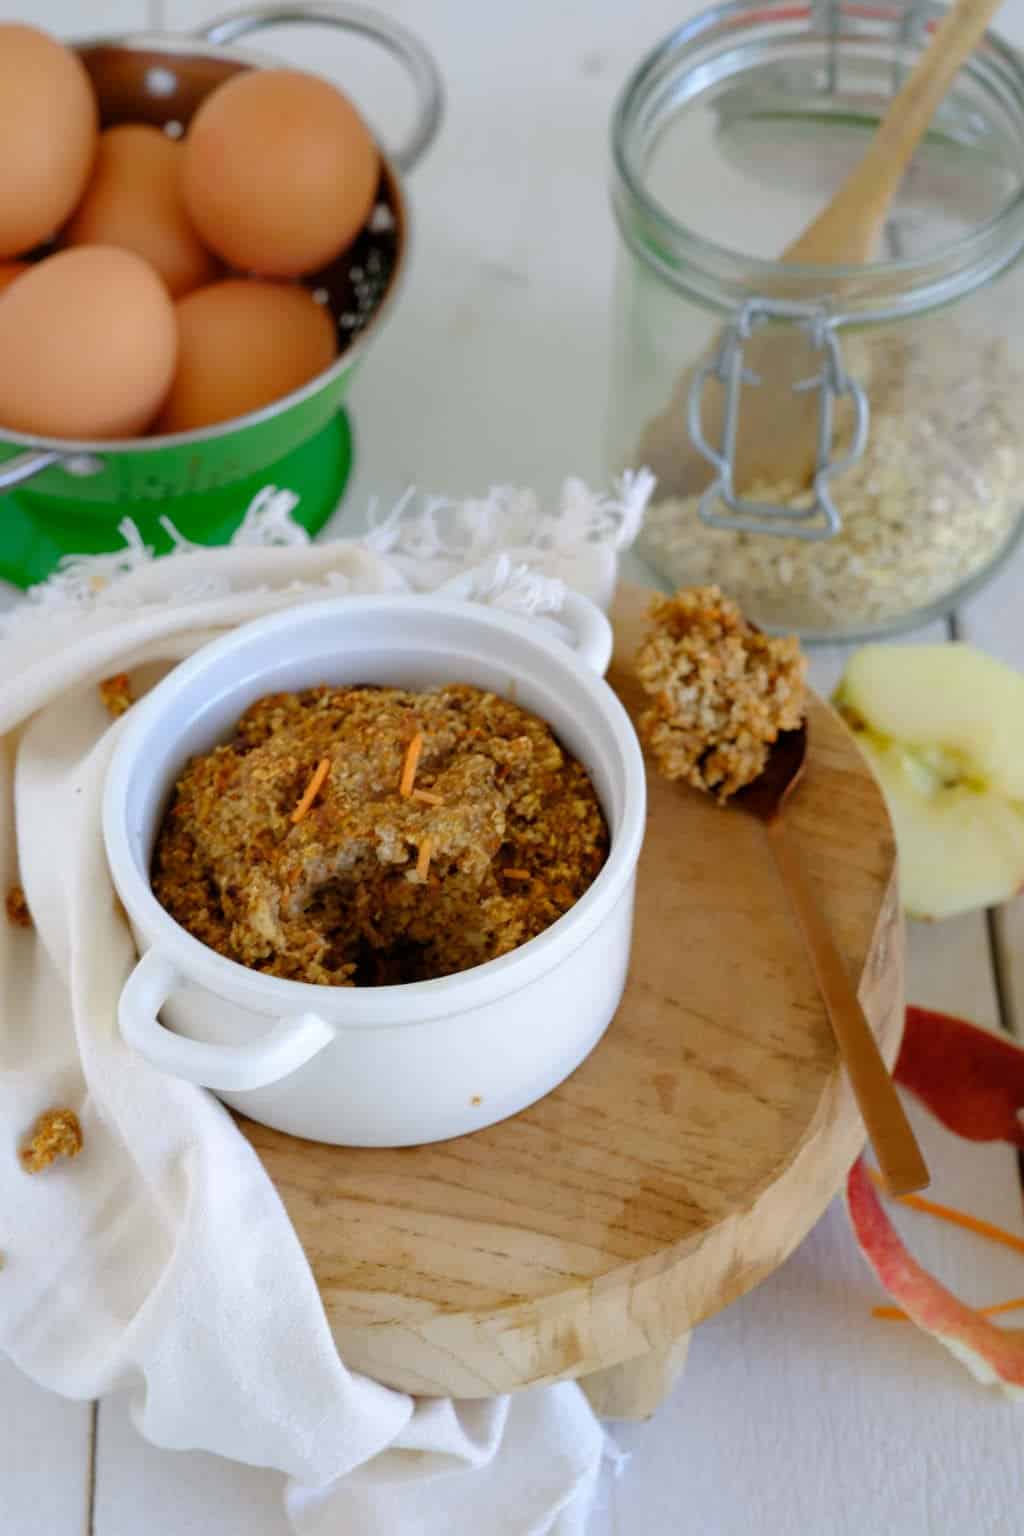 Worteltaart havermout uit de oven is een goed begin van de dag. Dit ontbijt recept zit boordevol goede ingrediënten voor langdurige energie voor de ochtend.